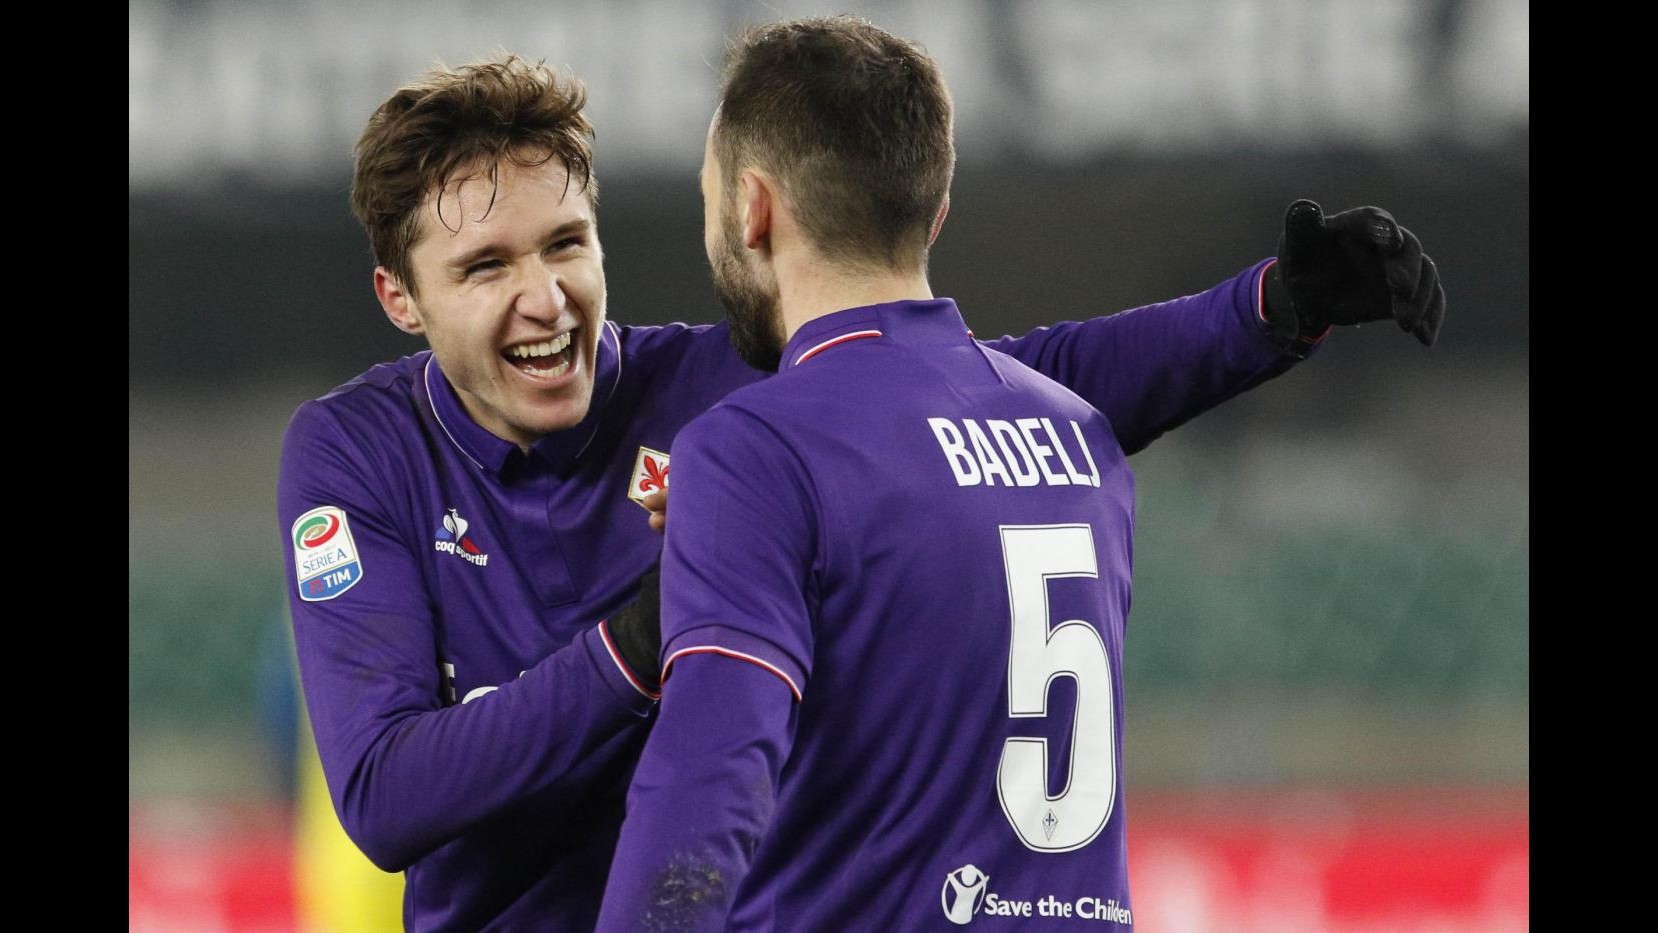 FOTO Fiorentina cala il tris in trasferta: Chievo battuto 3-0